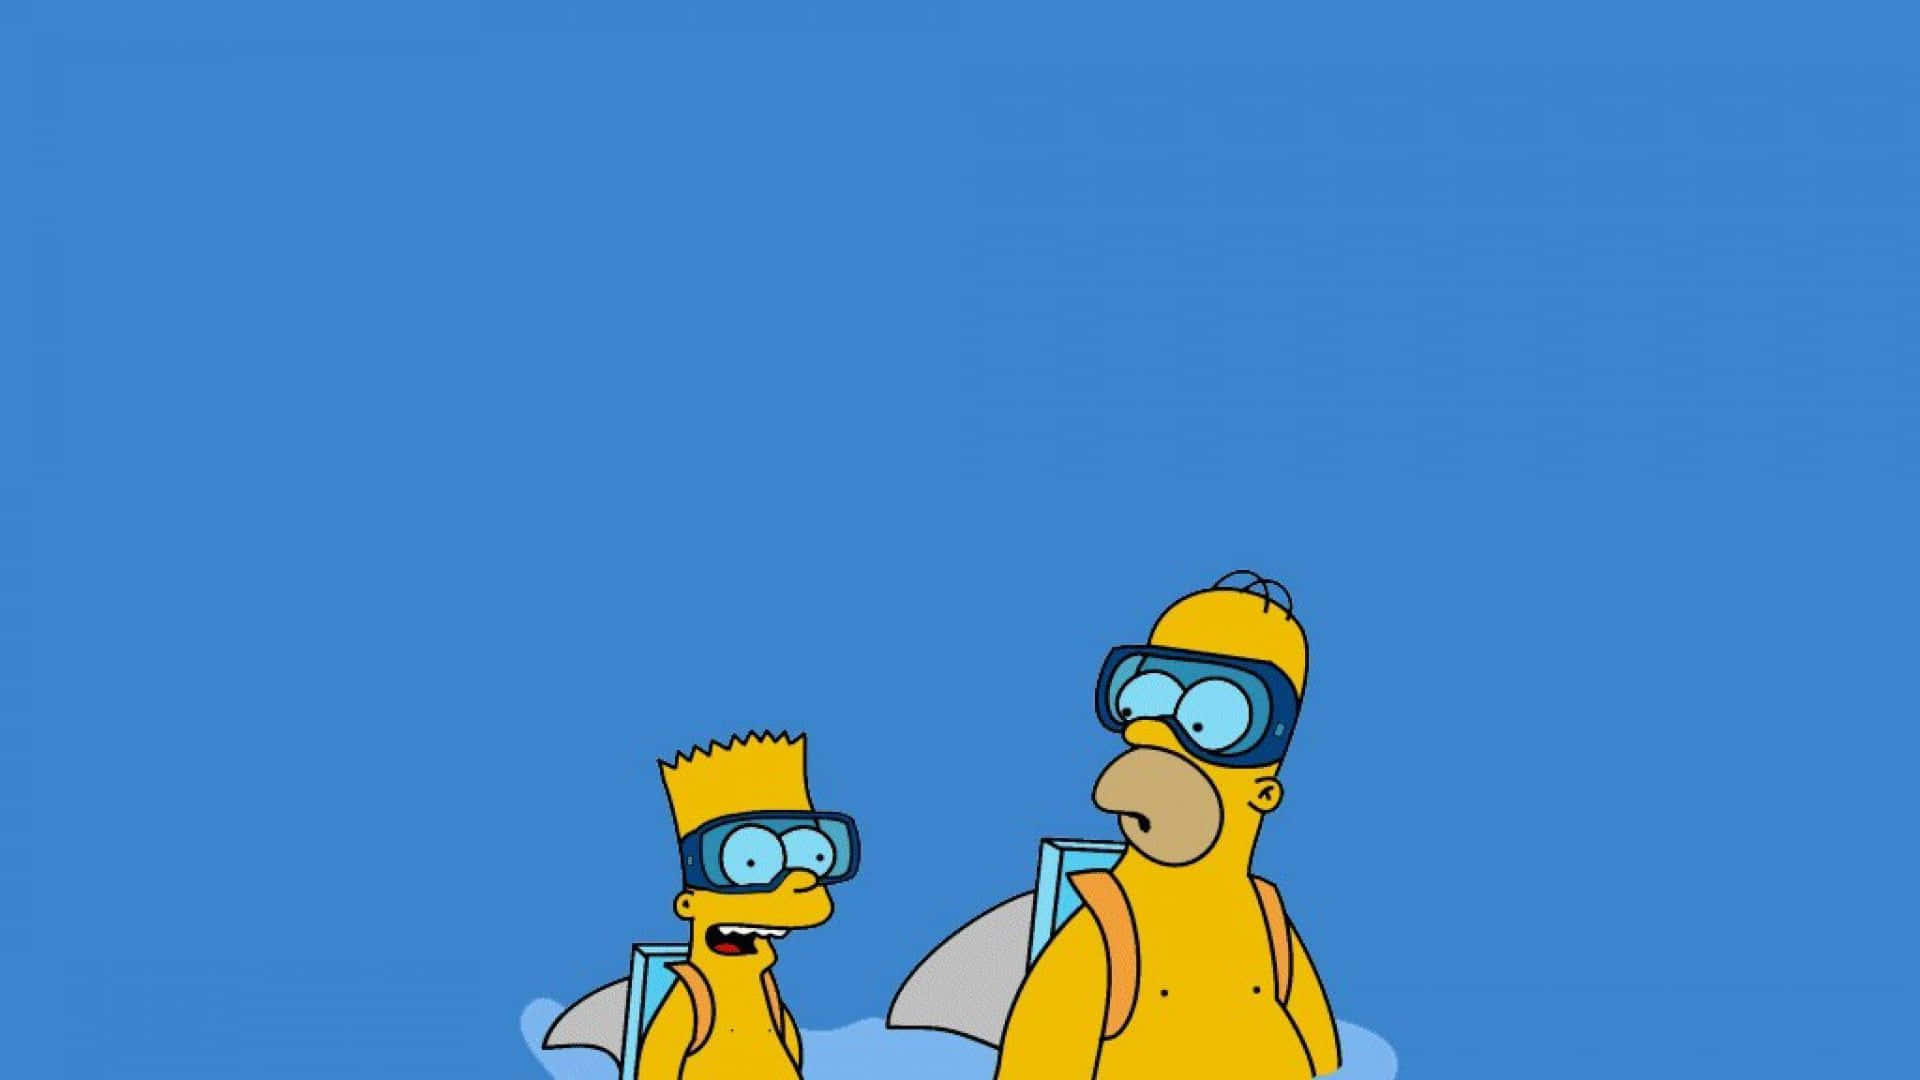 De Simpsons tapeter, Simpsons tapeter, Simpsons tapeter, Simpsons tapeter Wallpaper